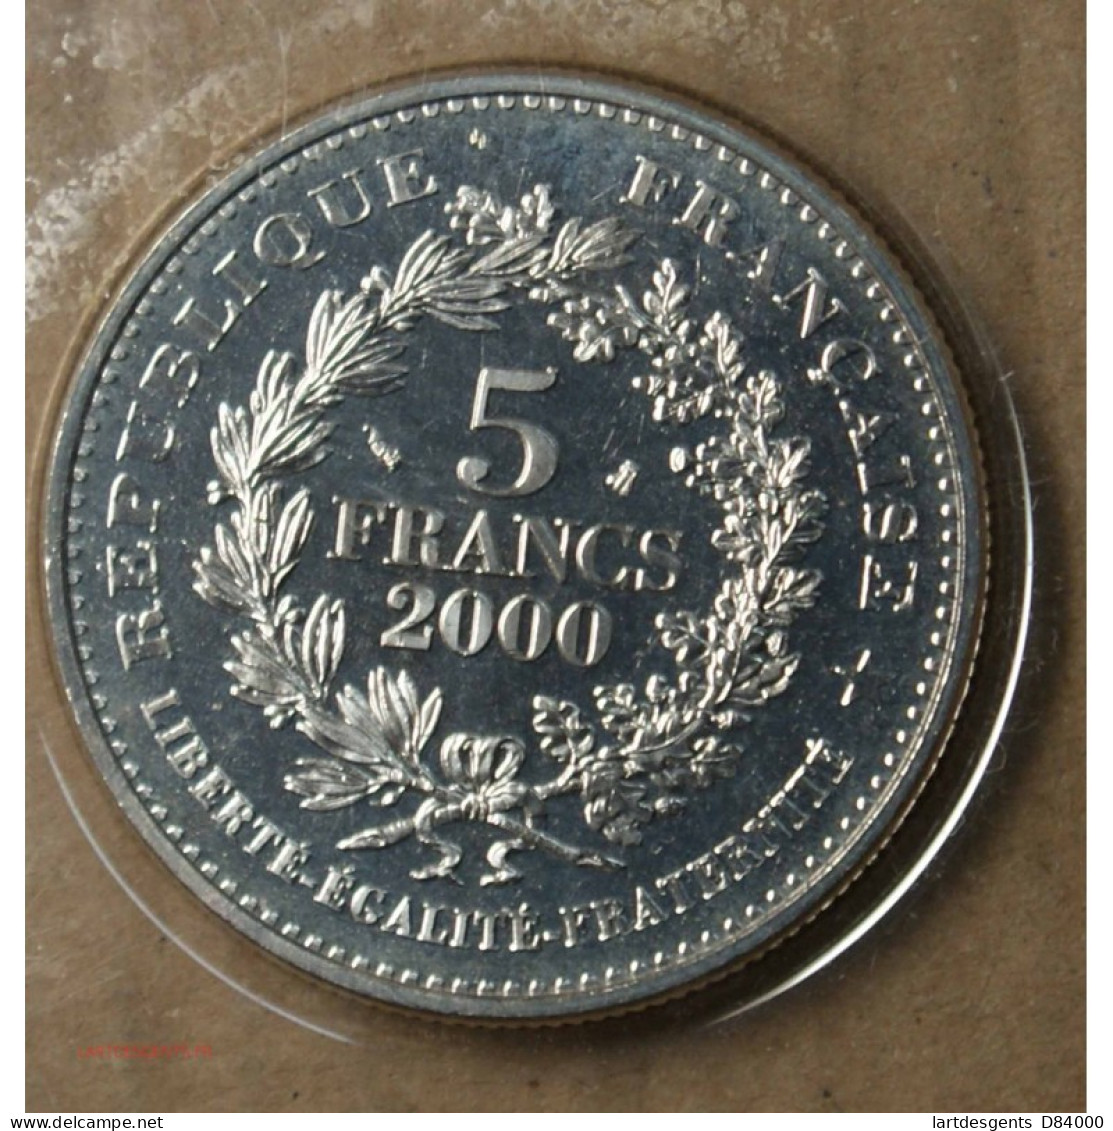 FRANCE, 5 Francs 2000 LE LOUIS D'OR DE LOUIS XIII FDC. Lartdesgents.fr - 1/4 Franc